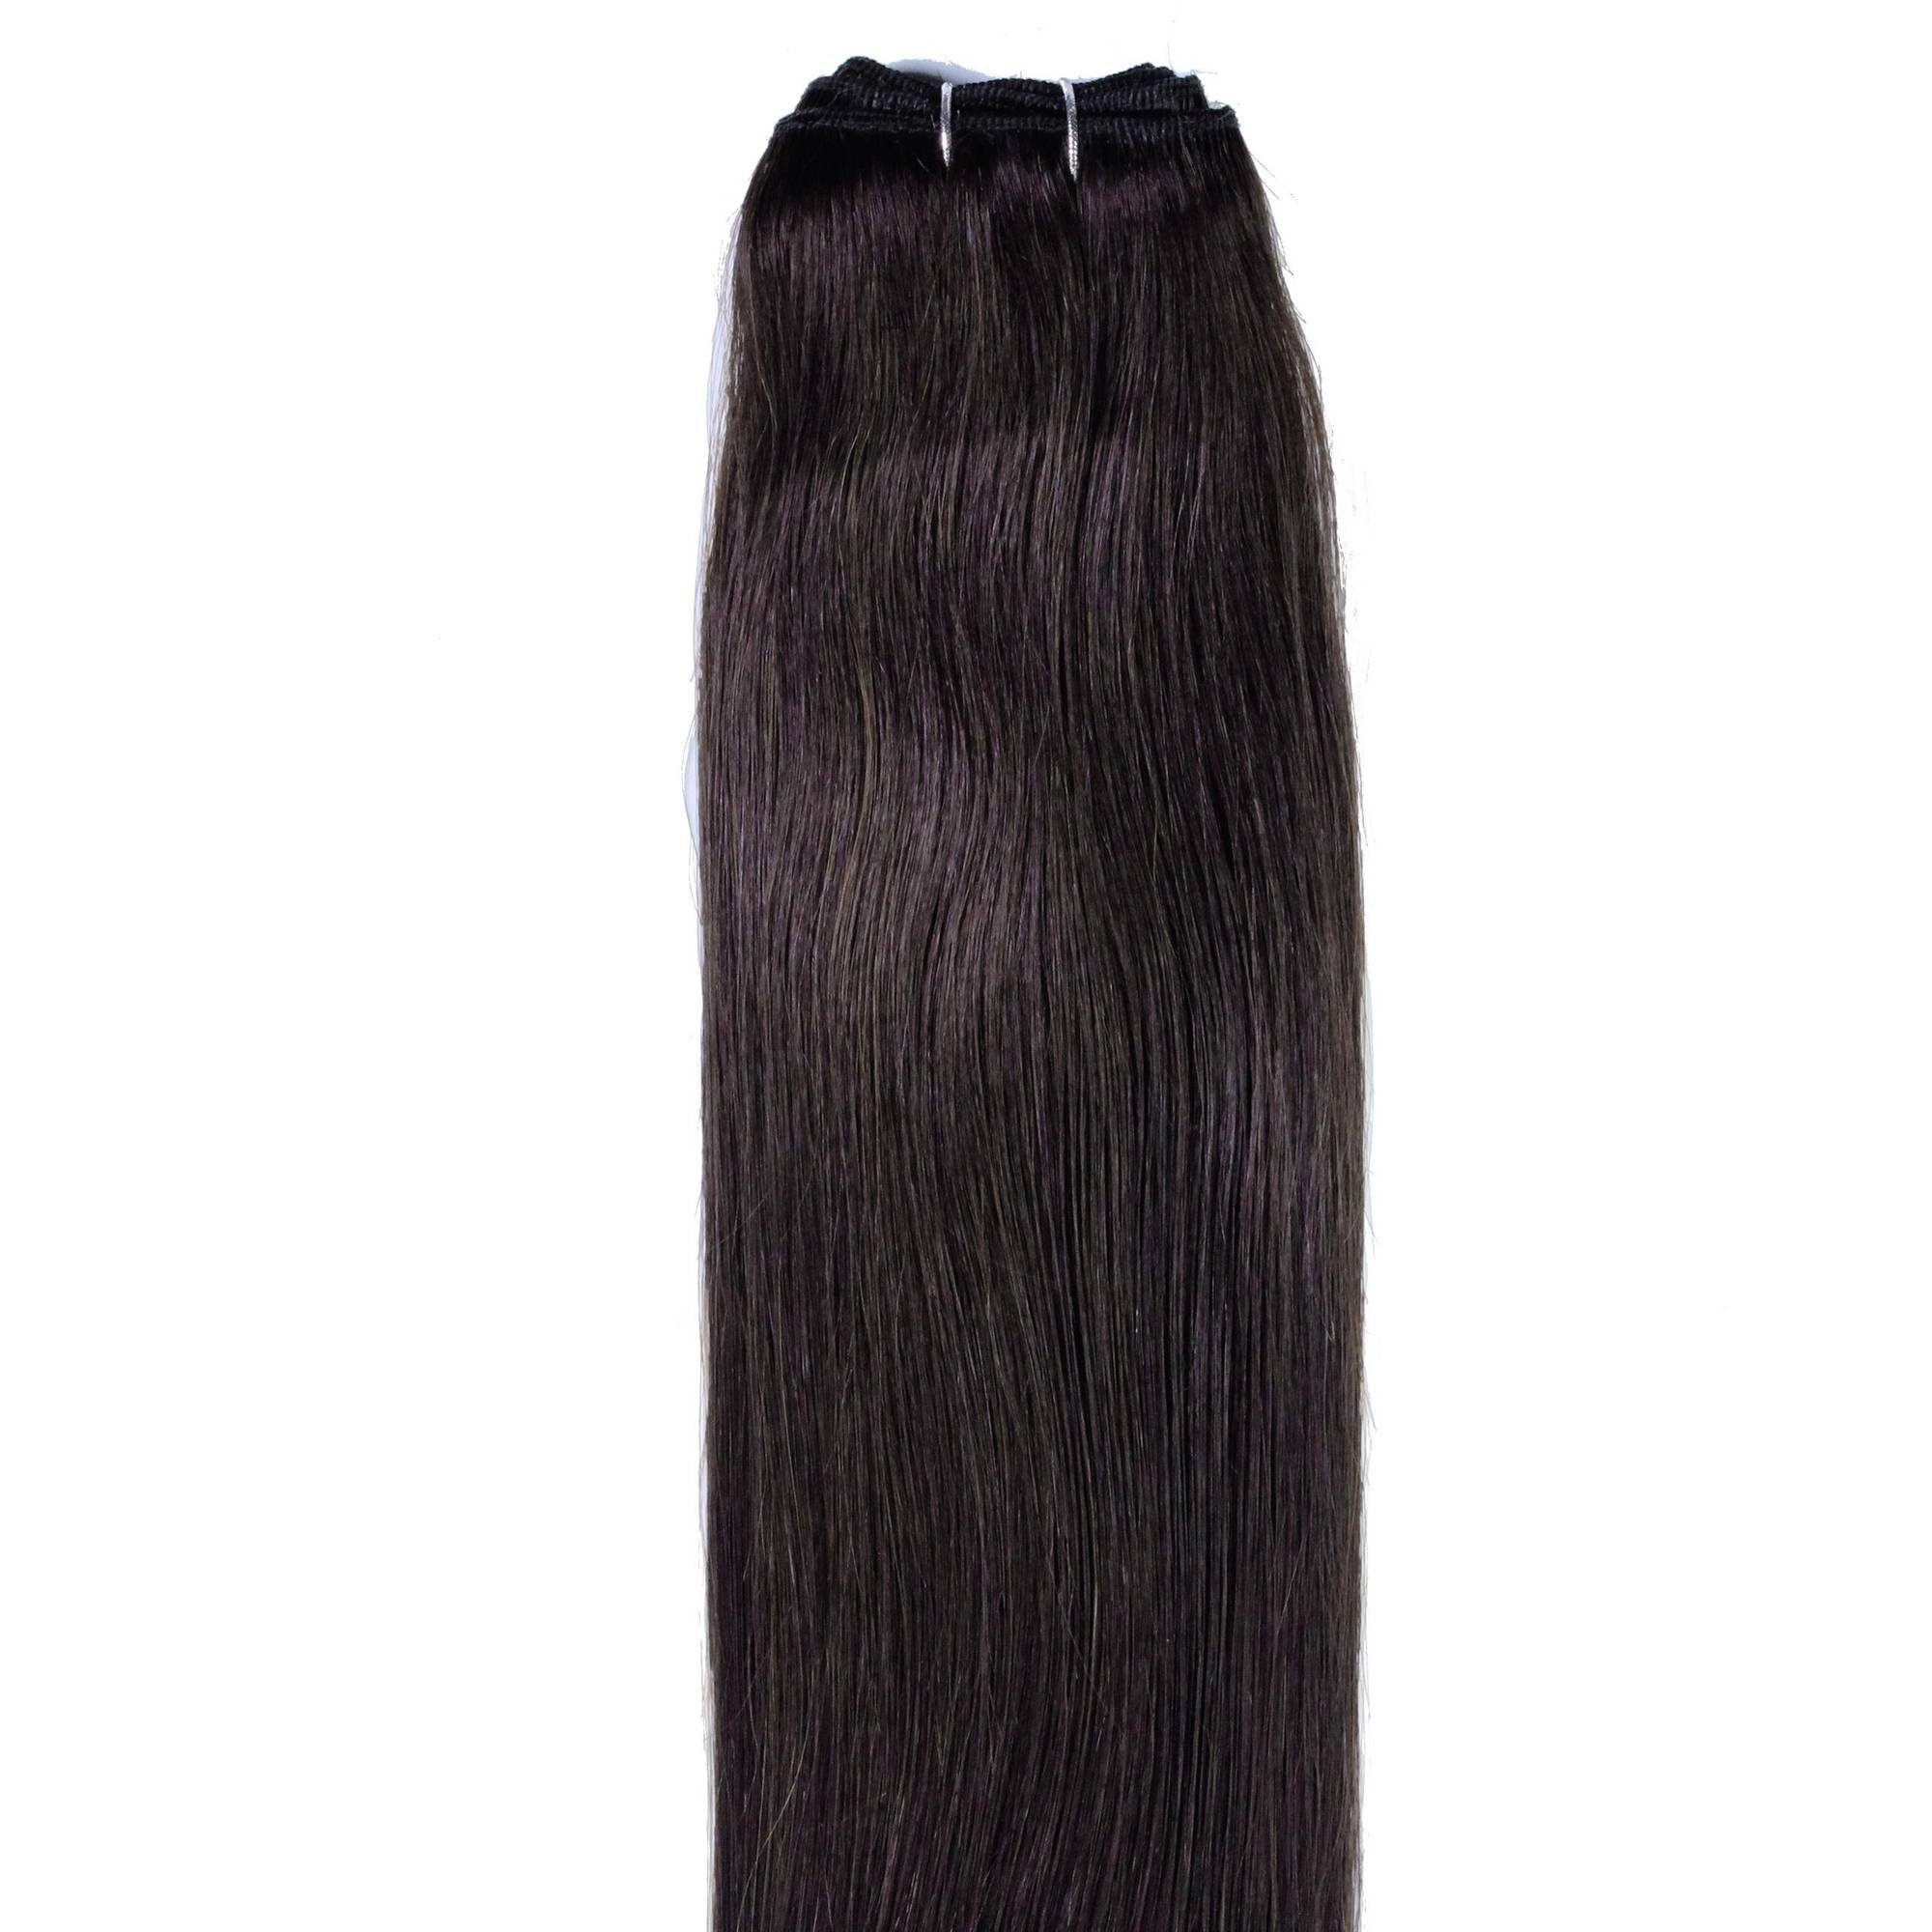 Echthaartresse Echthaar-Extension Hellbraun #5/0 hair2heart Glatte 40cm